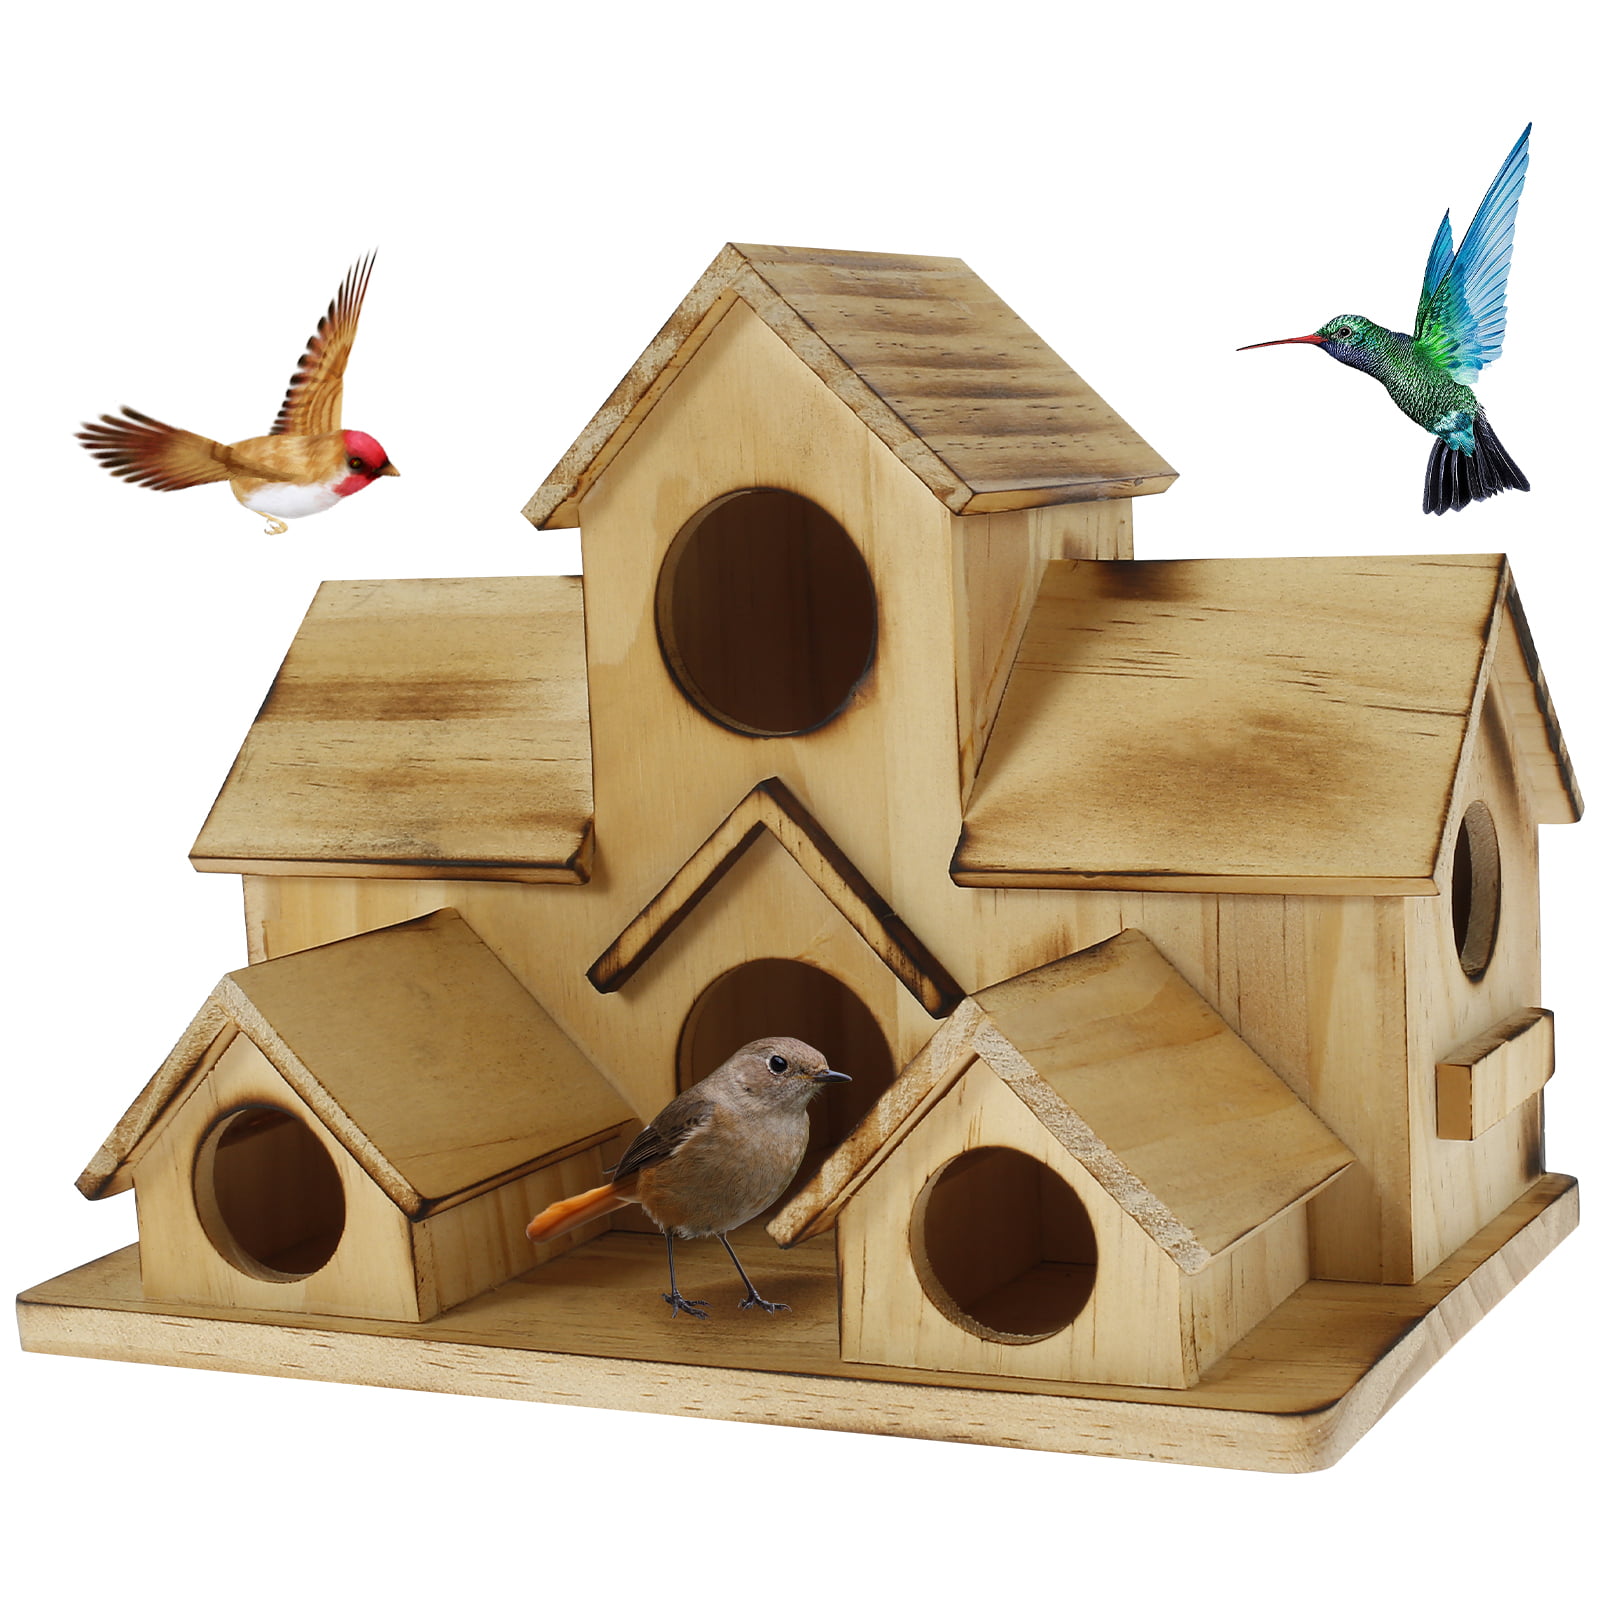 Raspbery Maison Oiseaux Exterieur Oiseau Nester Tissé Birdhouse Hanging Oiseaux  Cabane Colibri Nesting Bird Houses Box